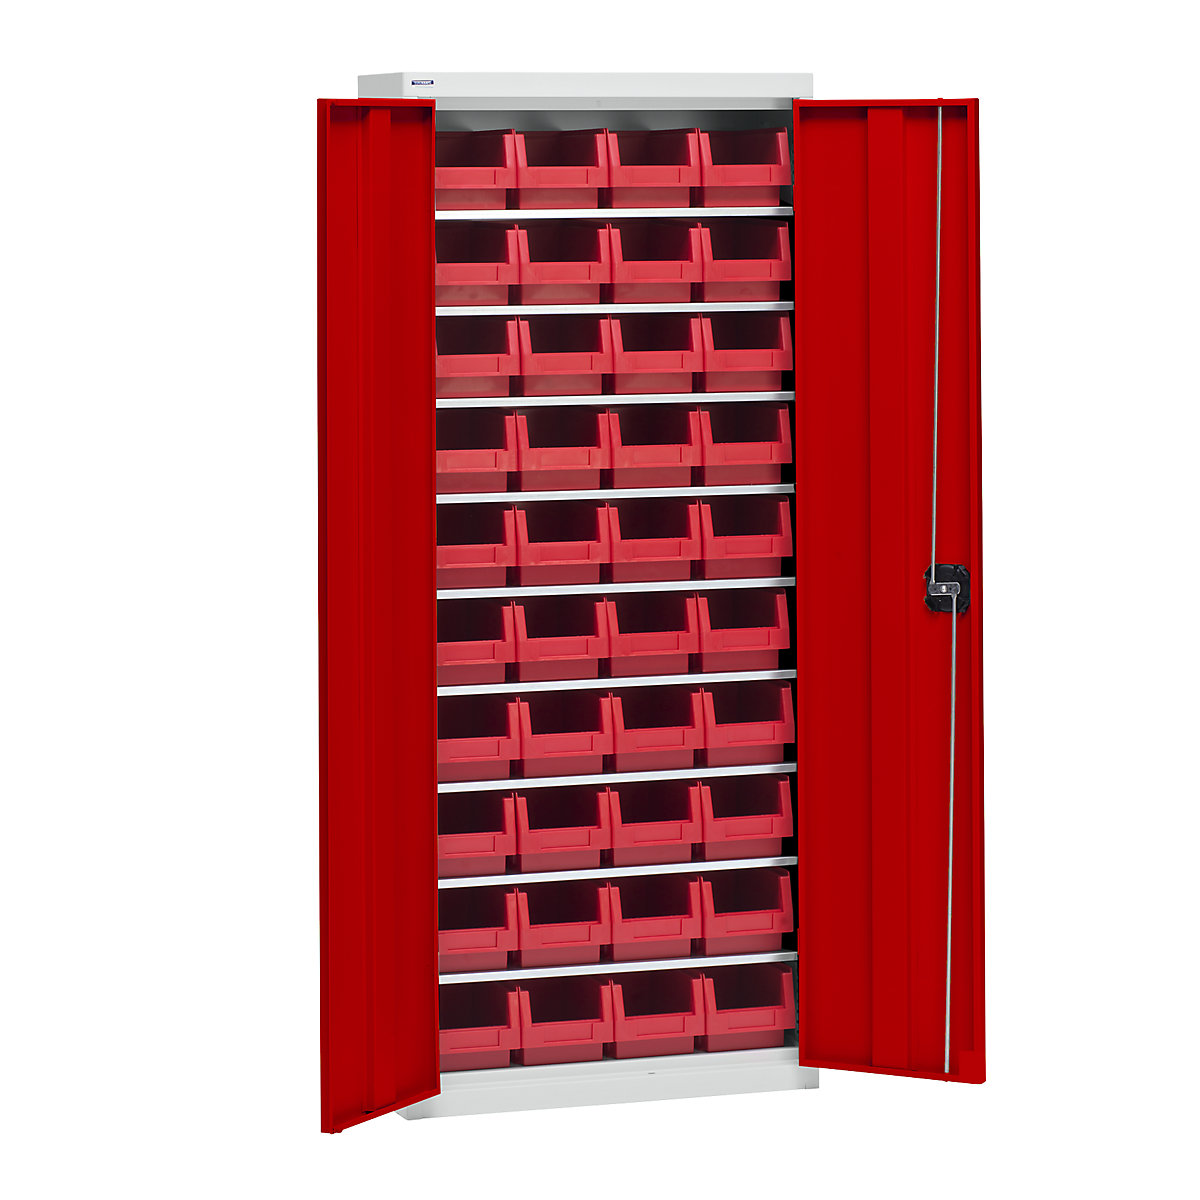 Anyagtároló szekrény tárolódobozokkal – eurokraft pro, magasság 1575 mm, 9 polc, világosszürke / közlekedési piros-6